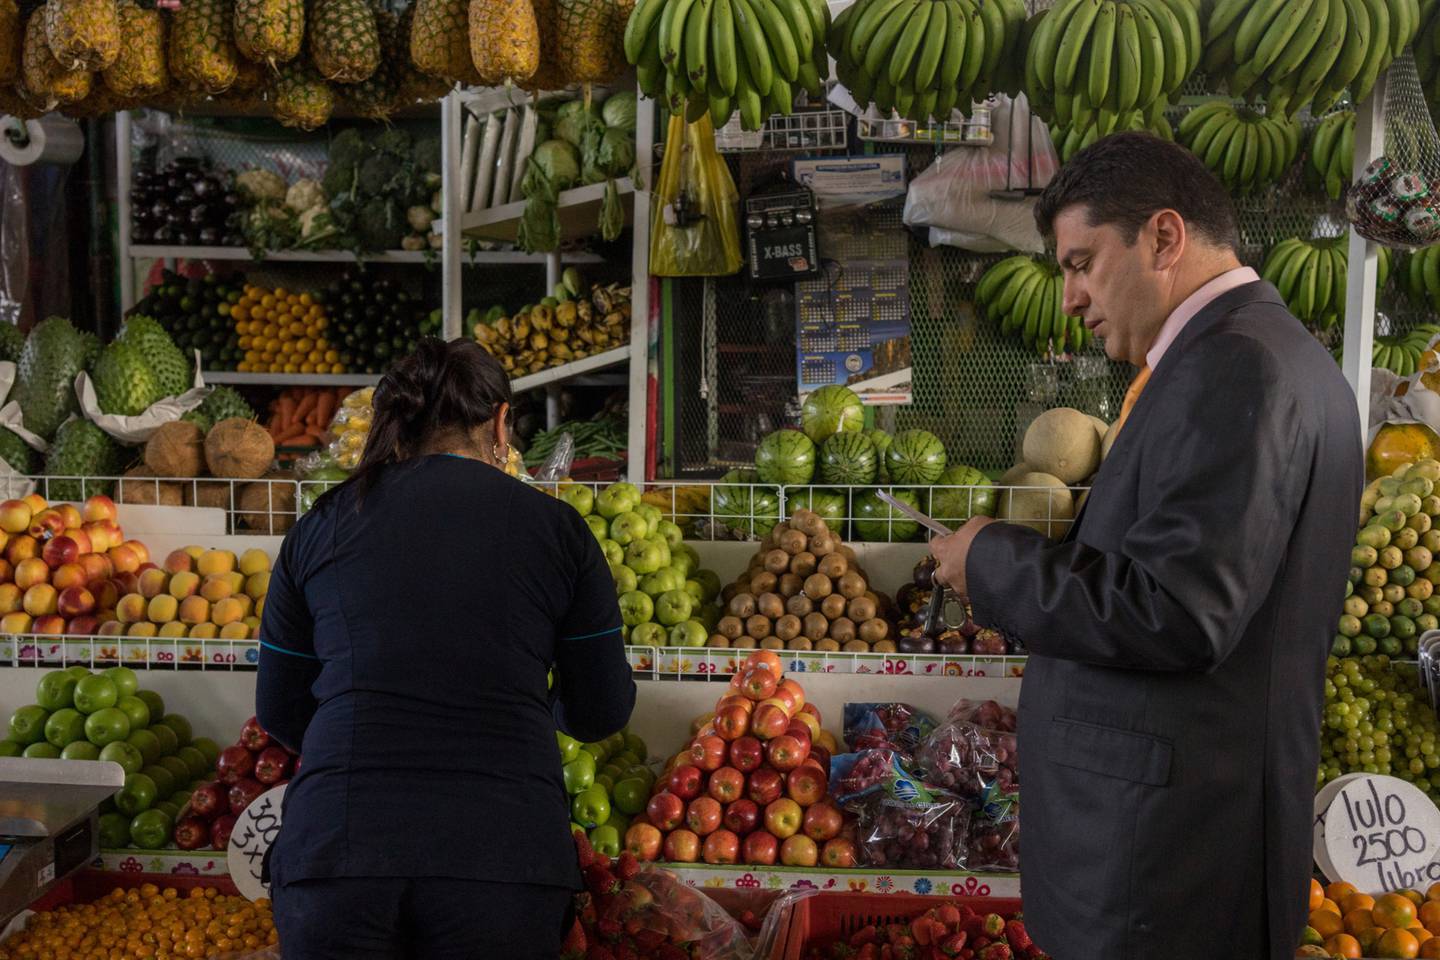 Un hombre revisa su lista de compras mientras un trabajador selecciona frutas.